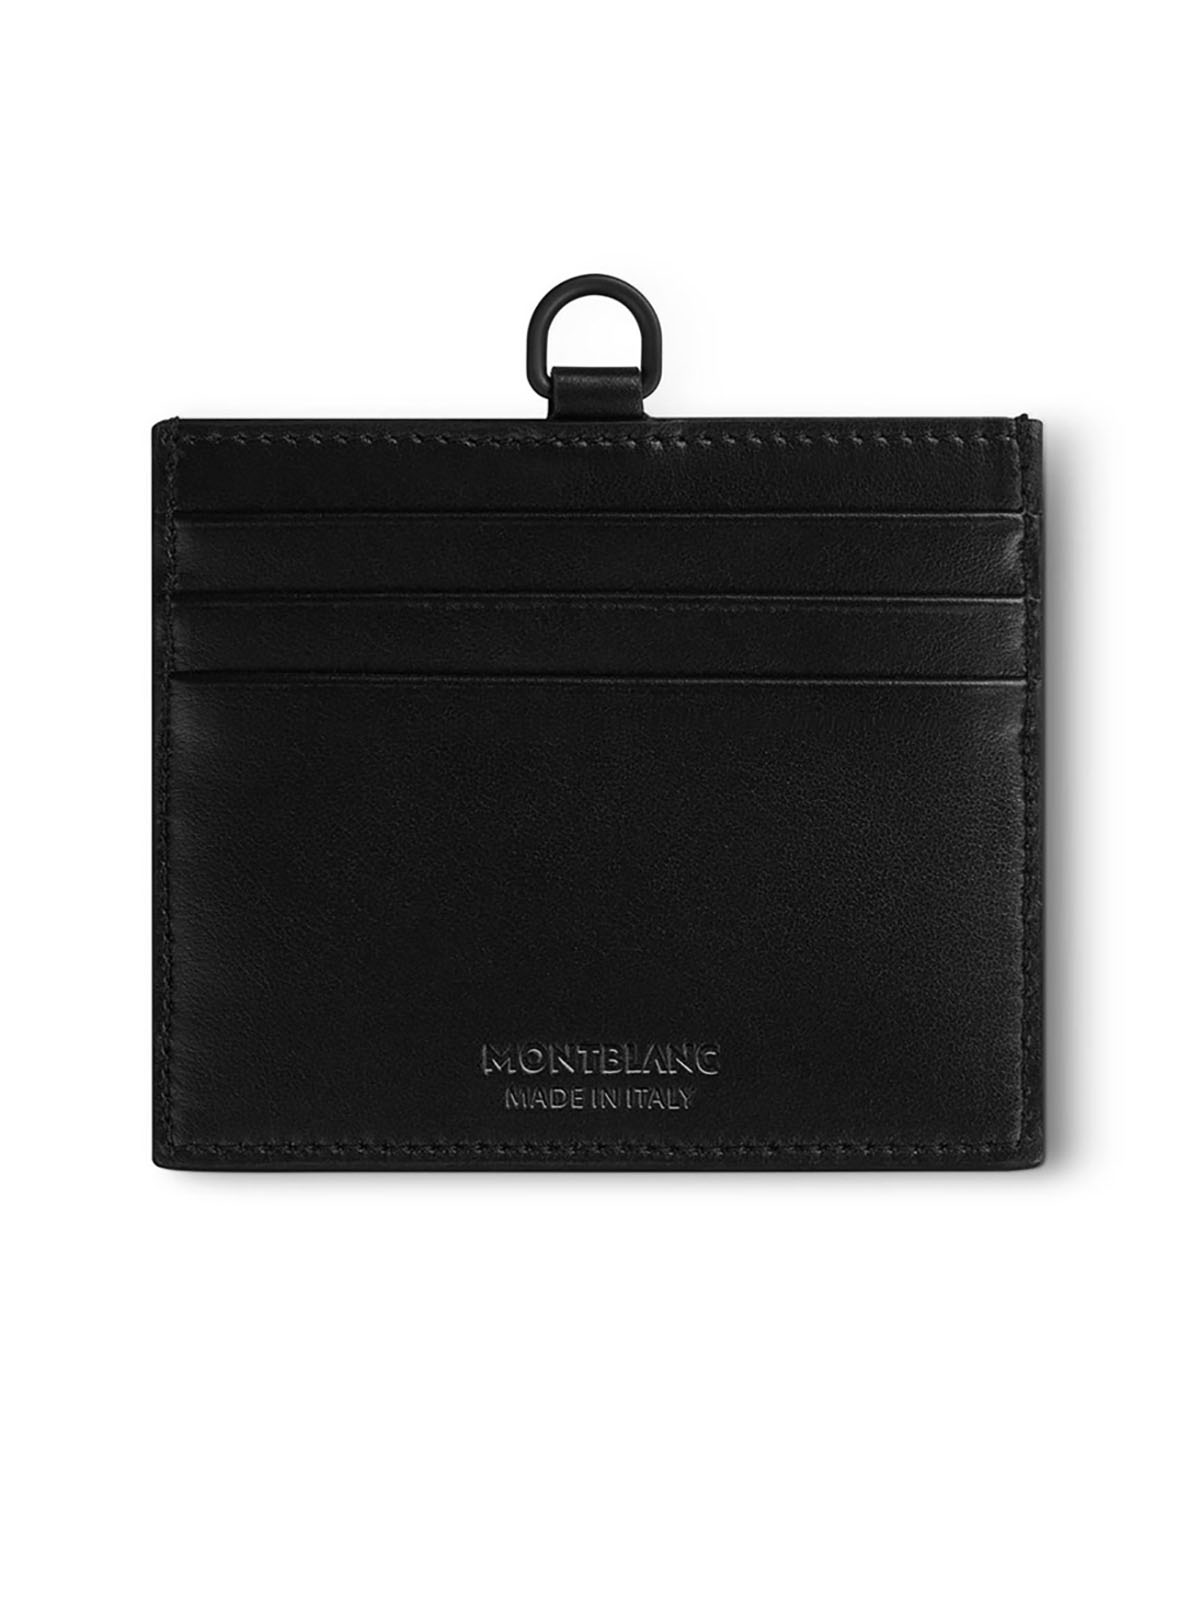 Montblanc Extreme 3.0 Black Leather Pocket Holder MB129979